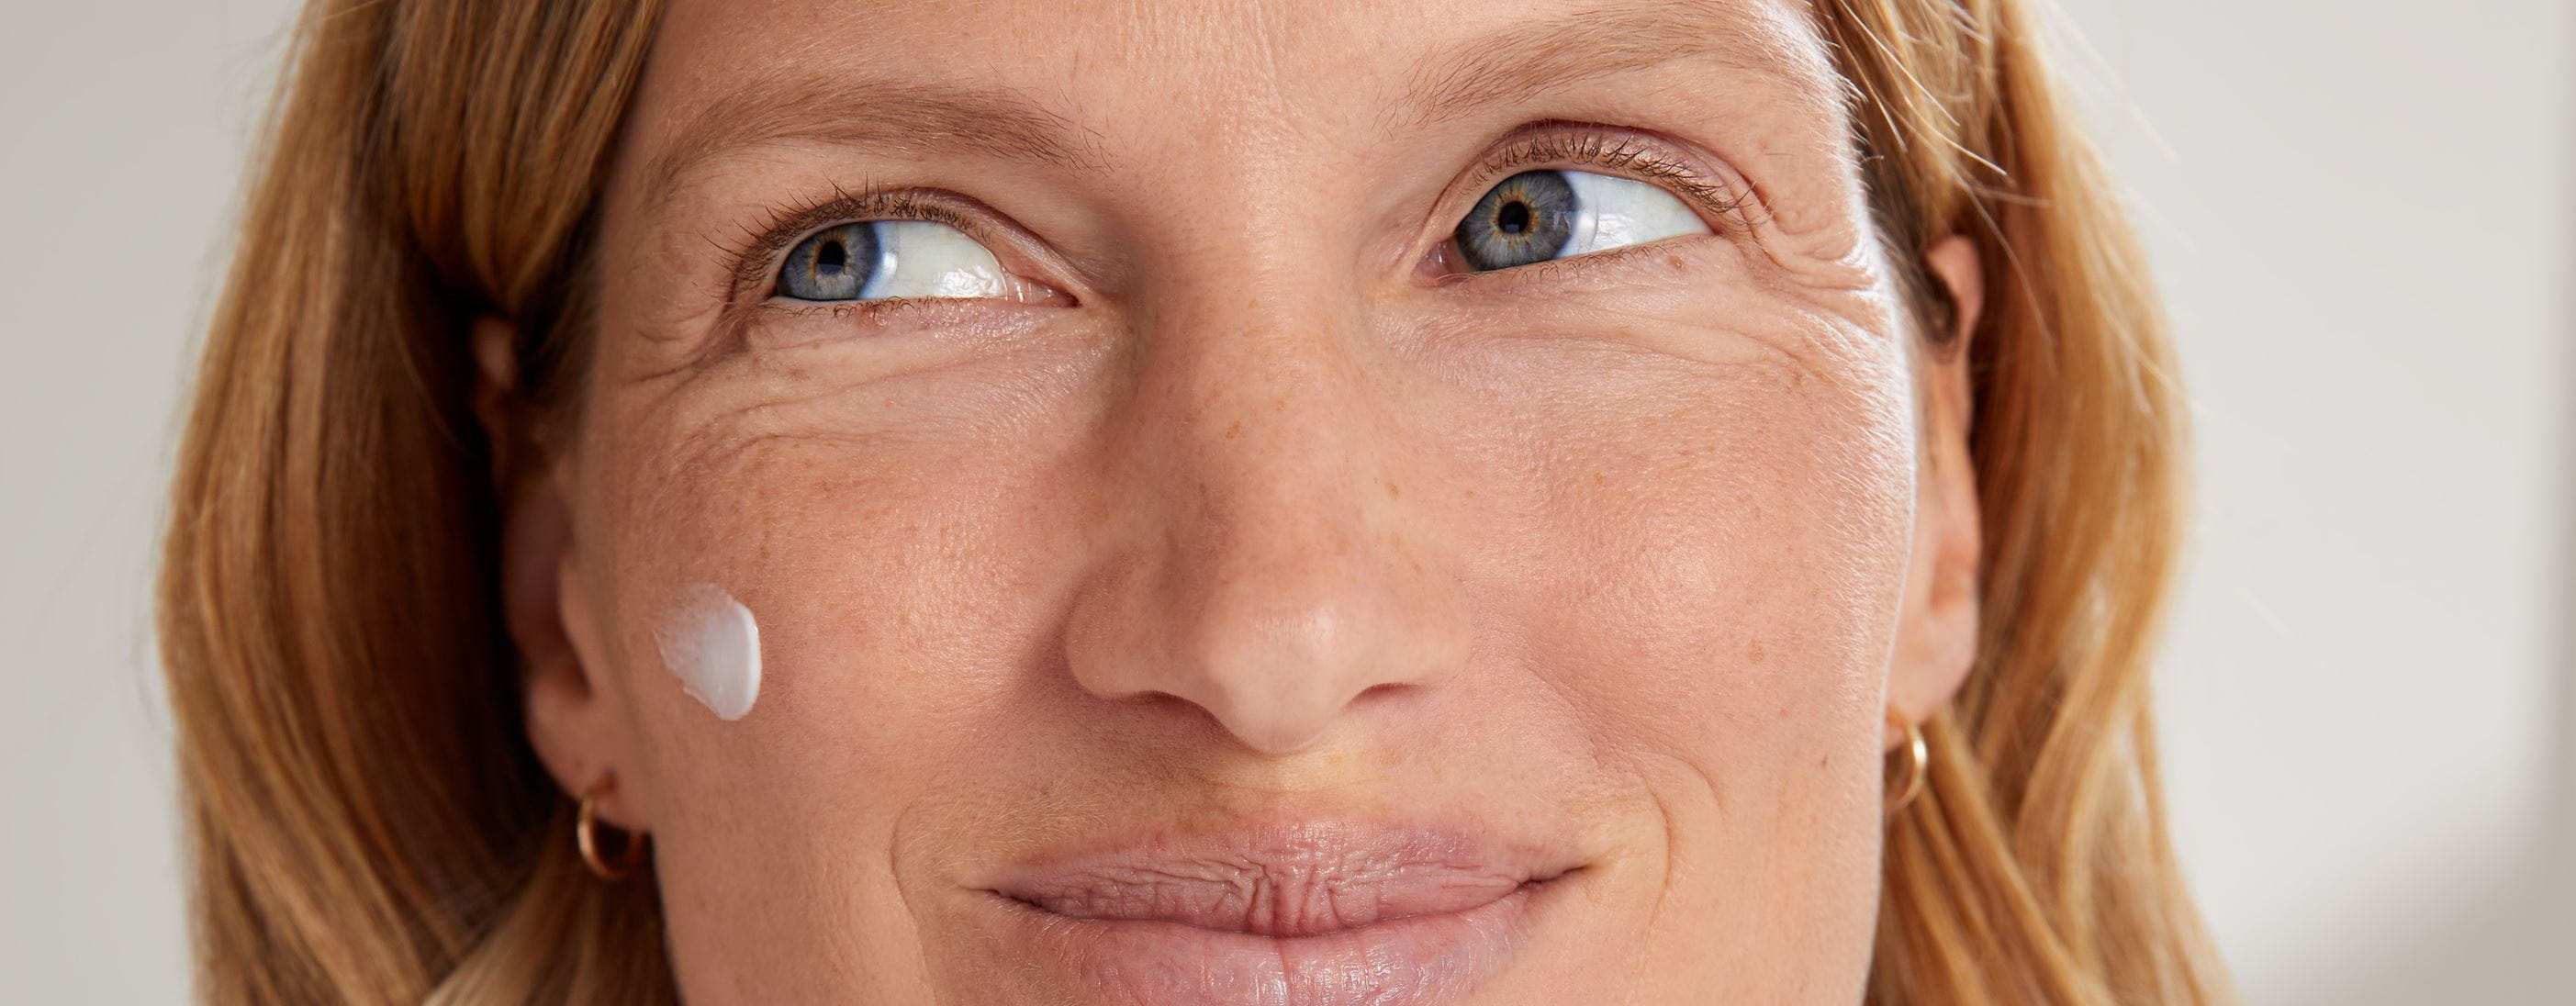 Mujer sosteniendo una crema facial antiarrugas Nivea Q10